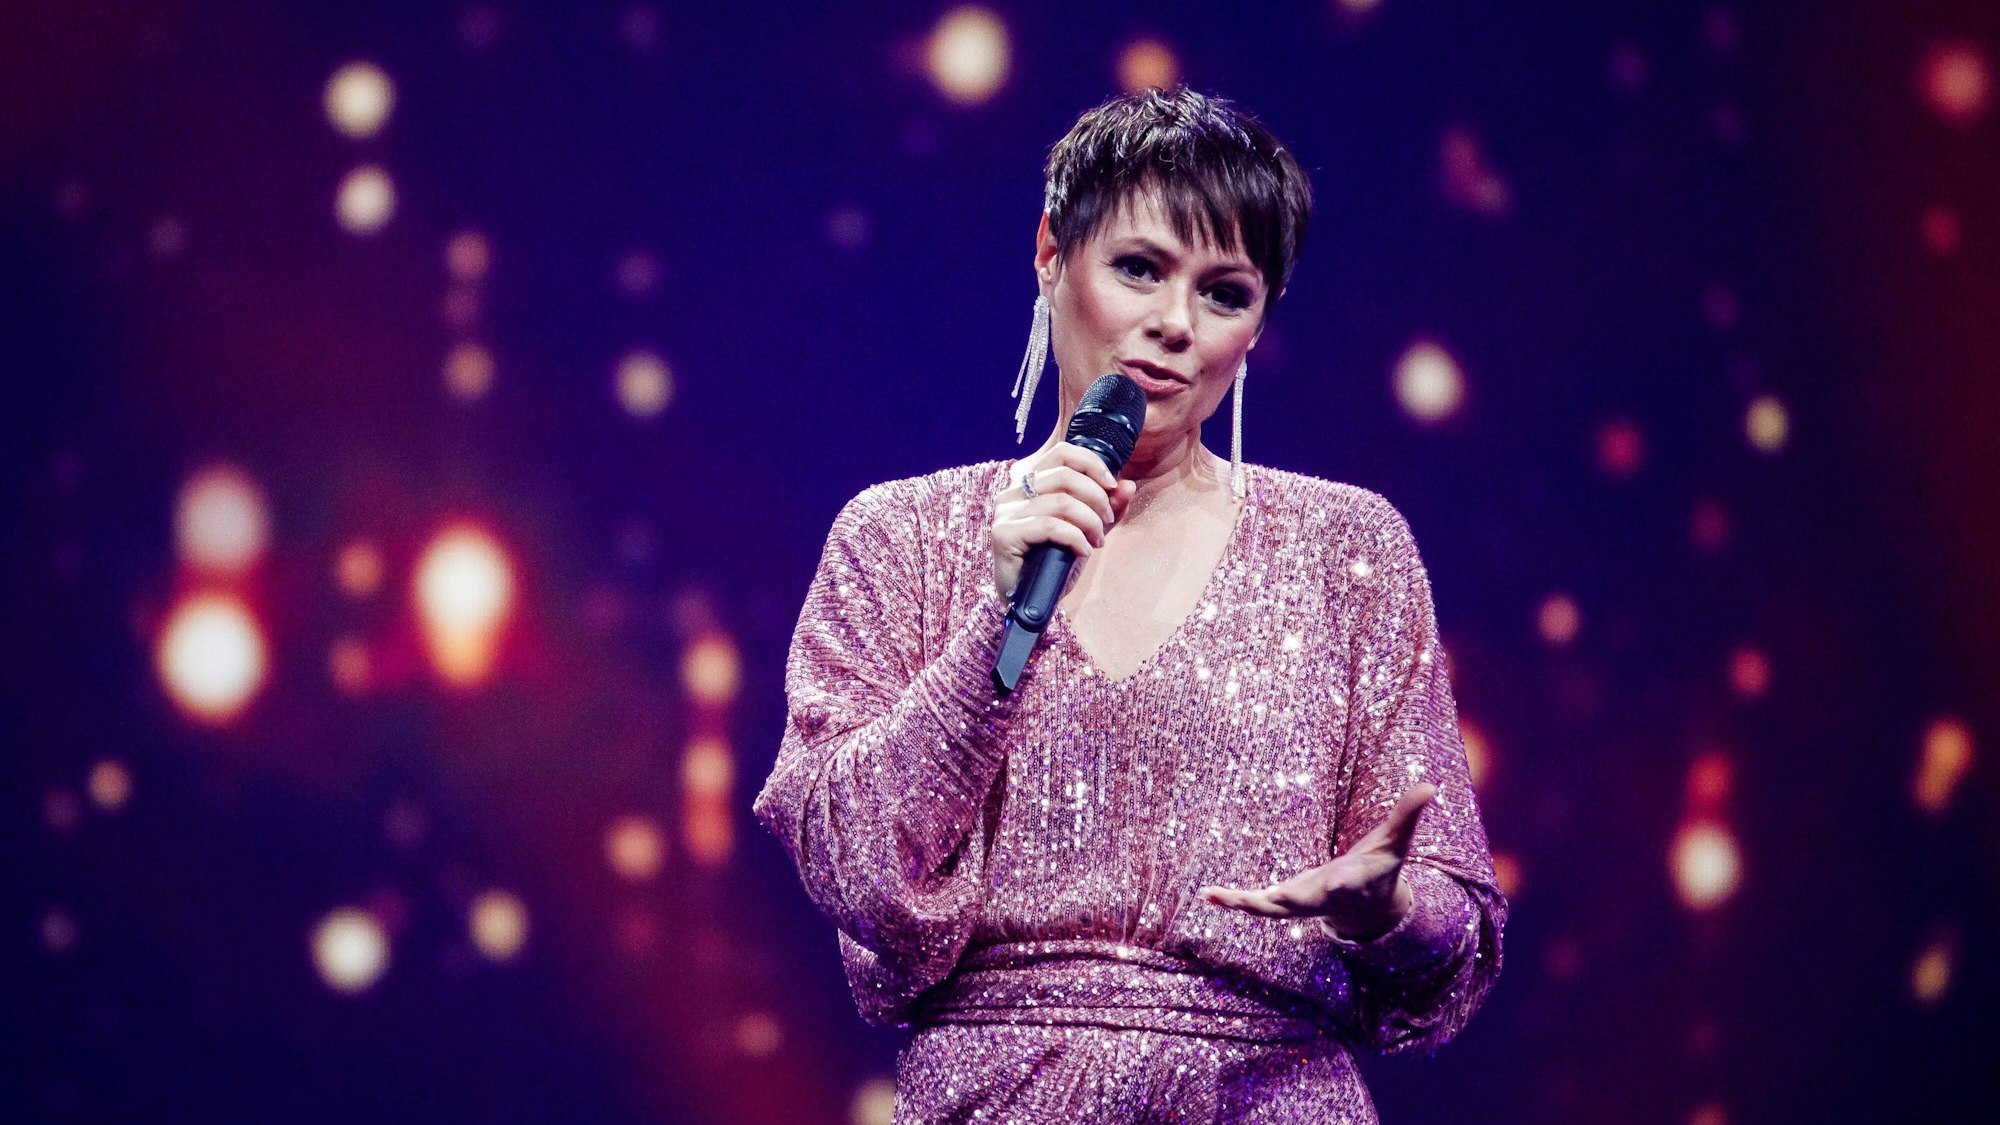 Sängerin Francine Jordi besiegte ganz alleine den Krebs. Auf dem Foto ist sie bei einer TV-Aufzeichnung im November 2020 zu sehen.